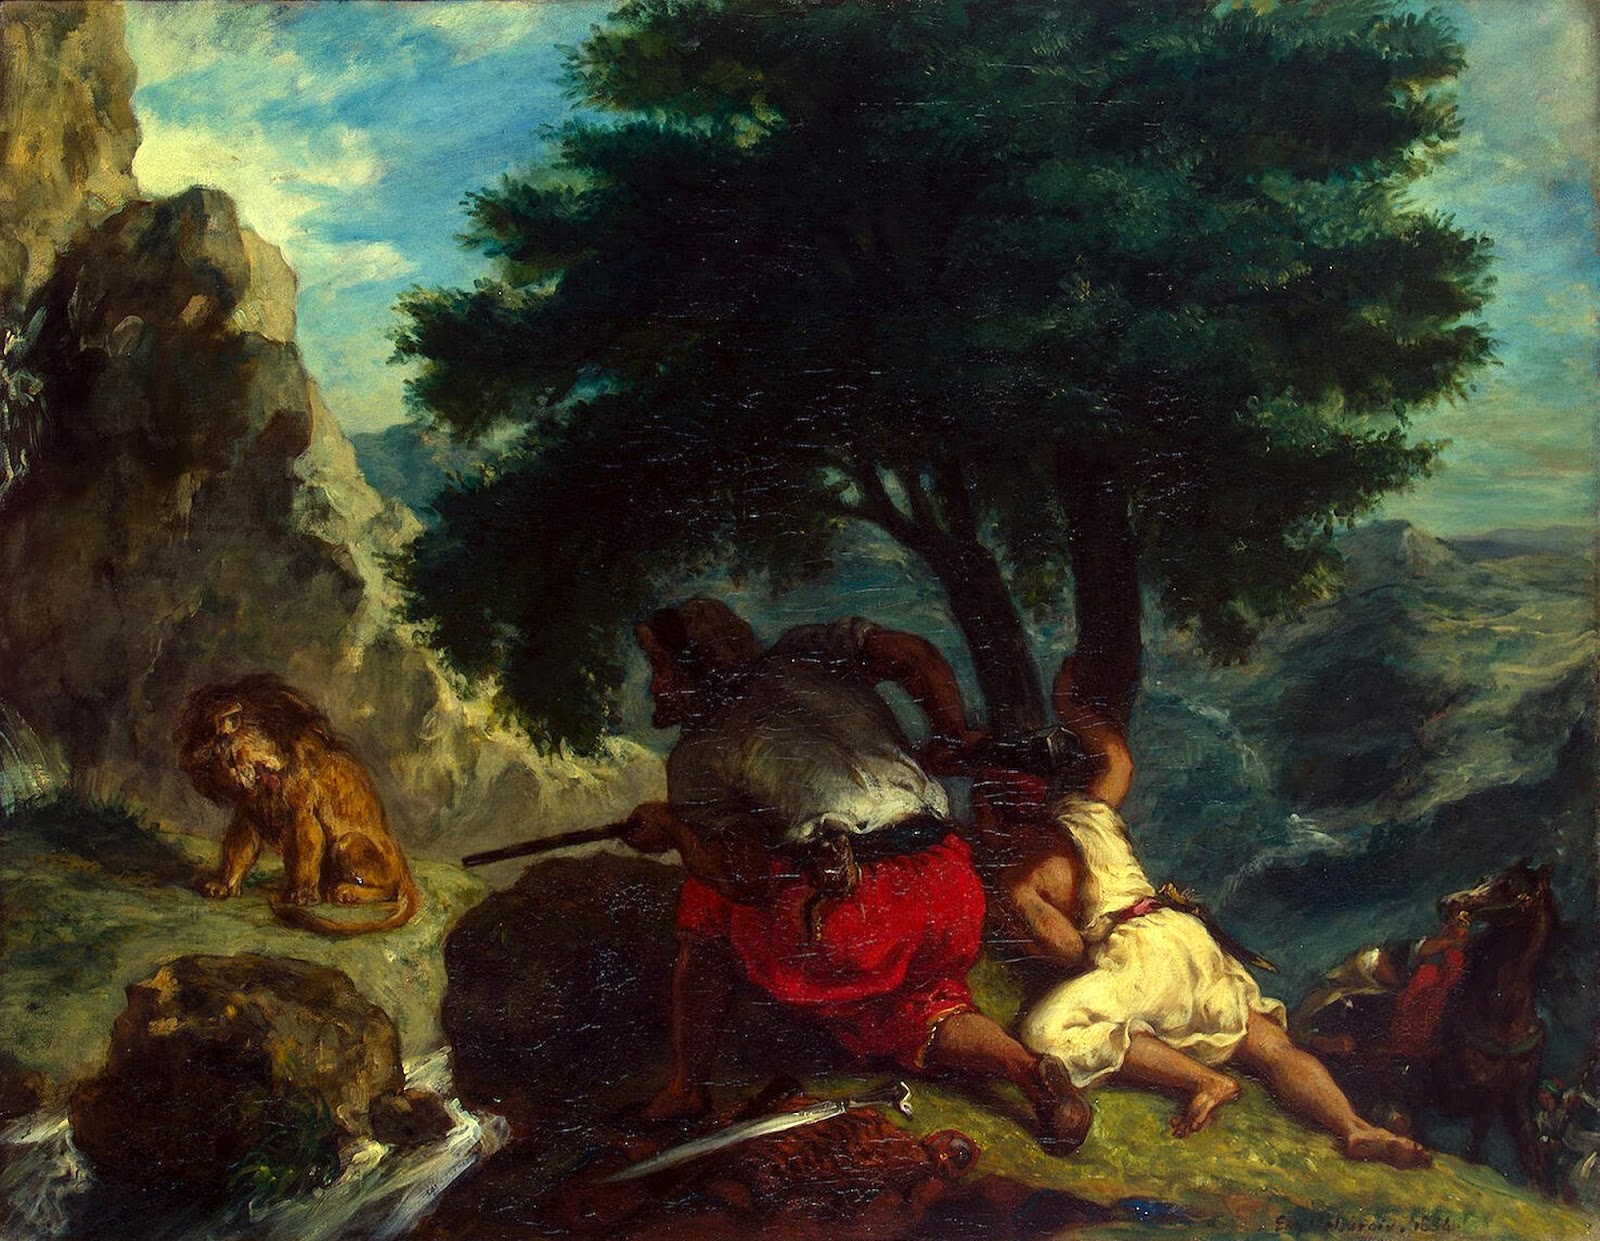 Eugene+Delacroix-1798-1863 (165).jpg